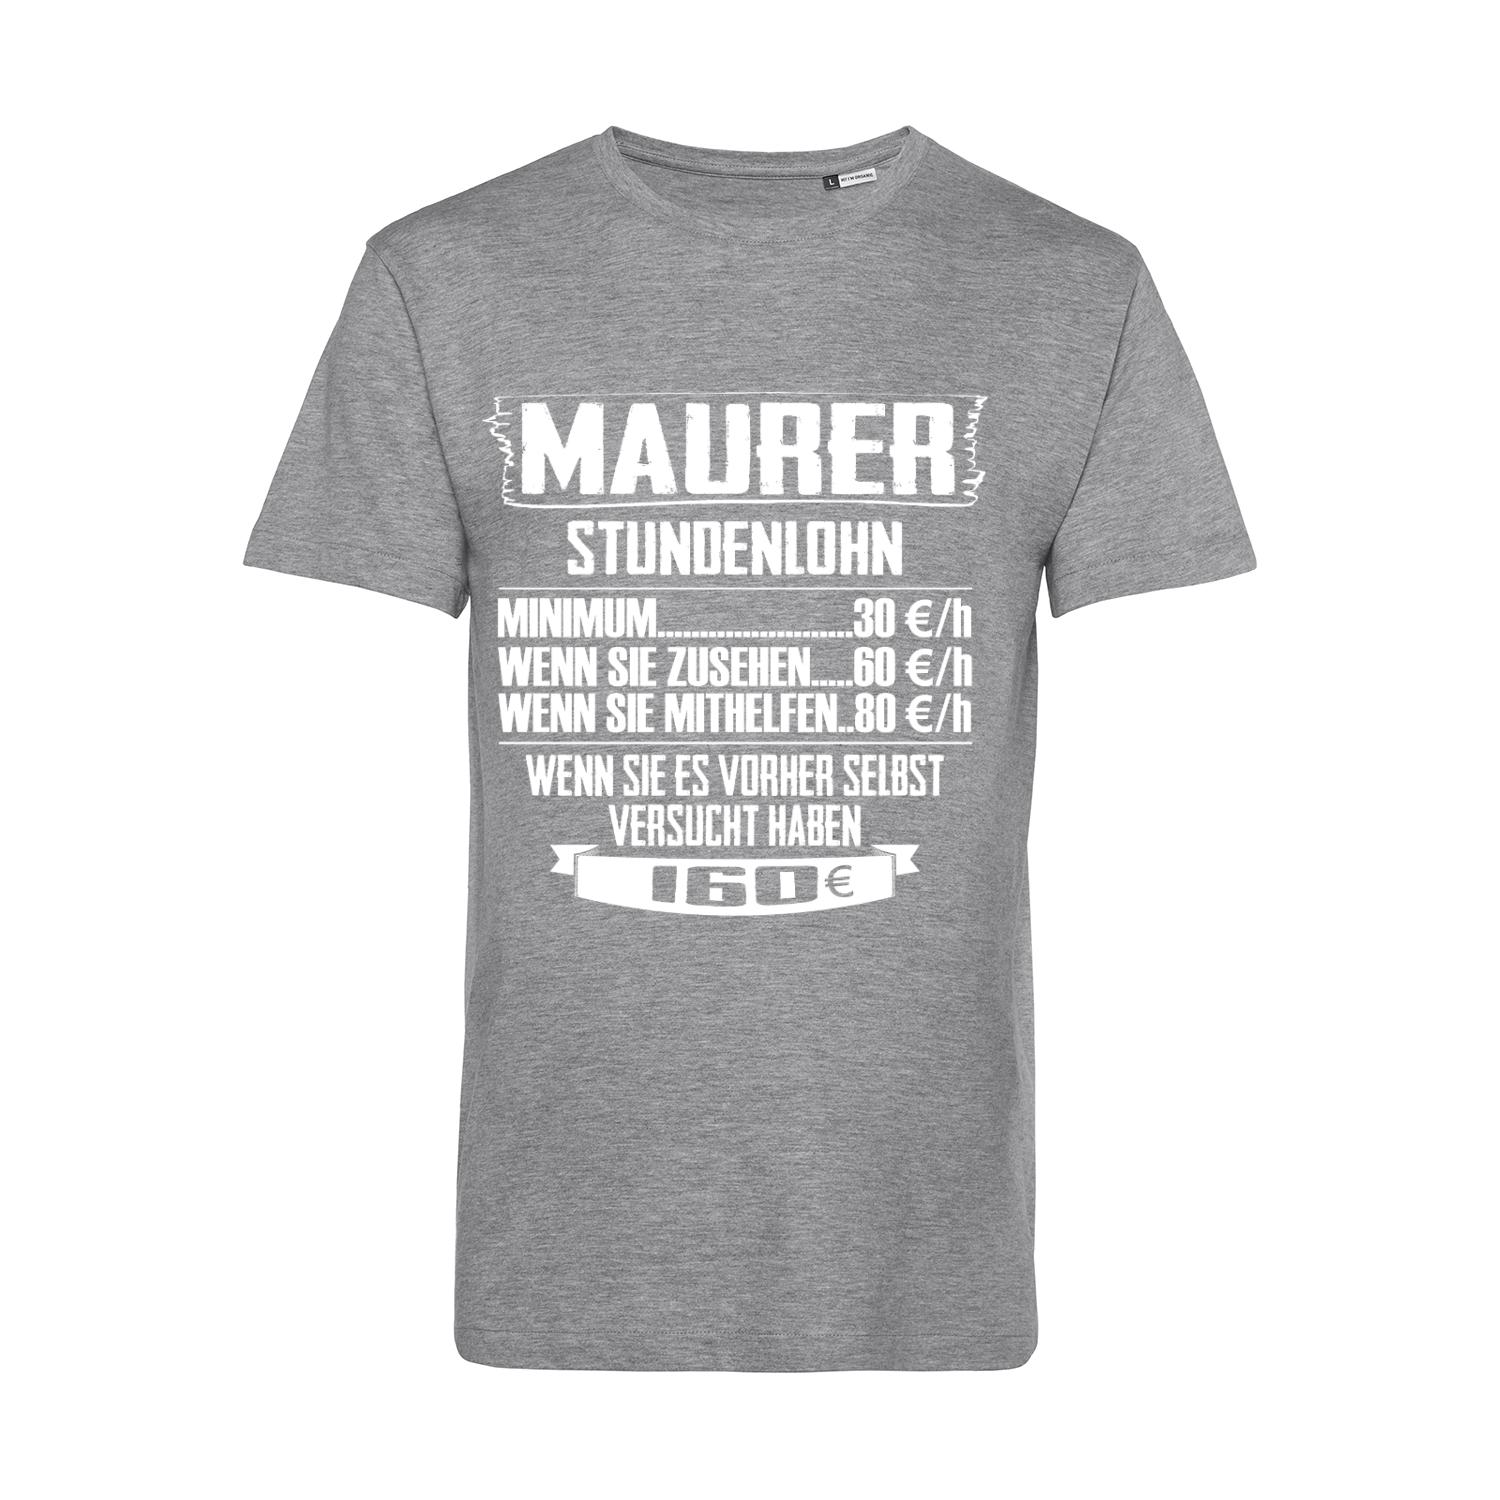 Nachhaltiges T-Shirt Herren Maurer - Stundenlohn Staffel